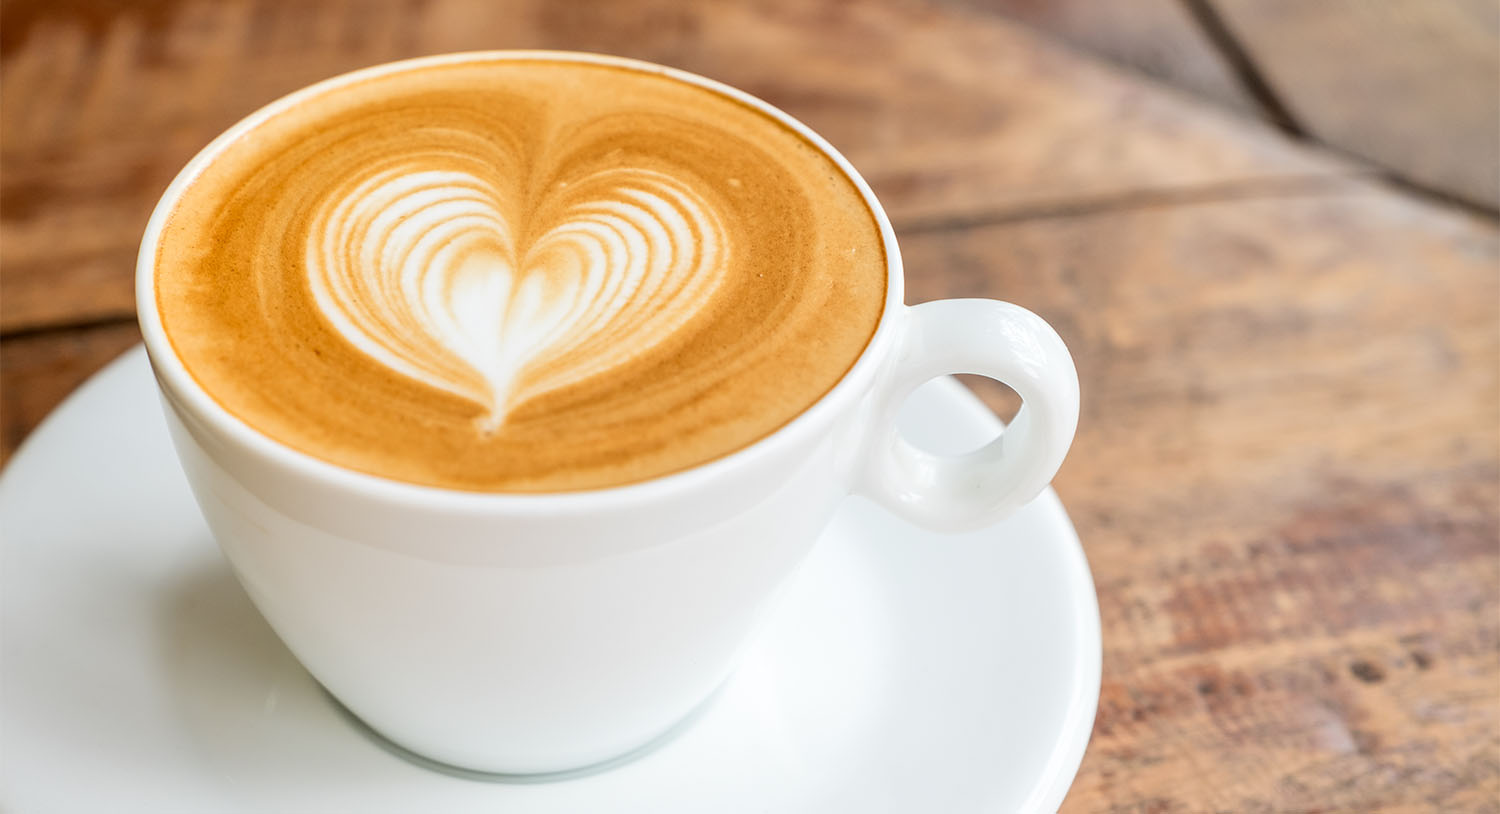 gorąca-kawa-w-białej-filiżance-cappuccino-wzorek-na-kawie-serduszko-kawa-z-kawiarni